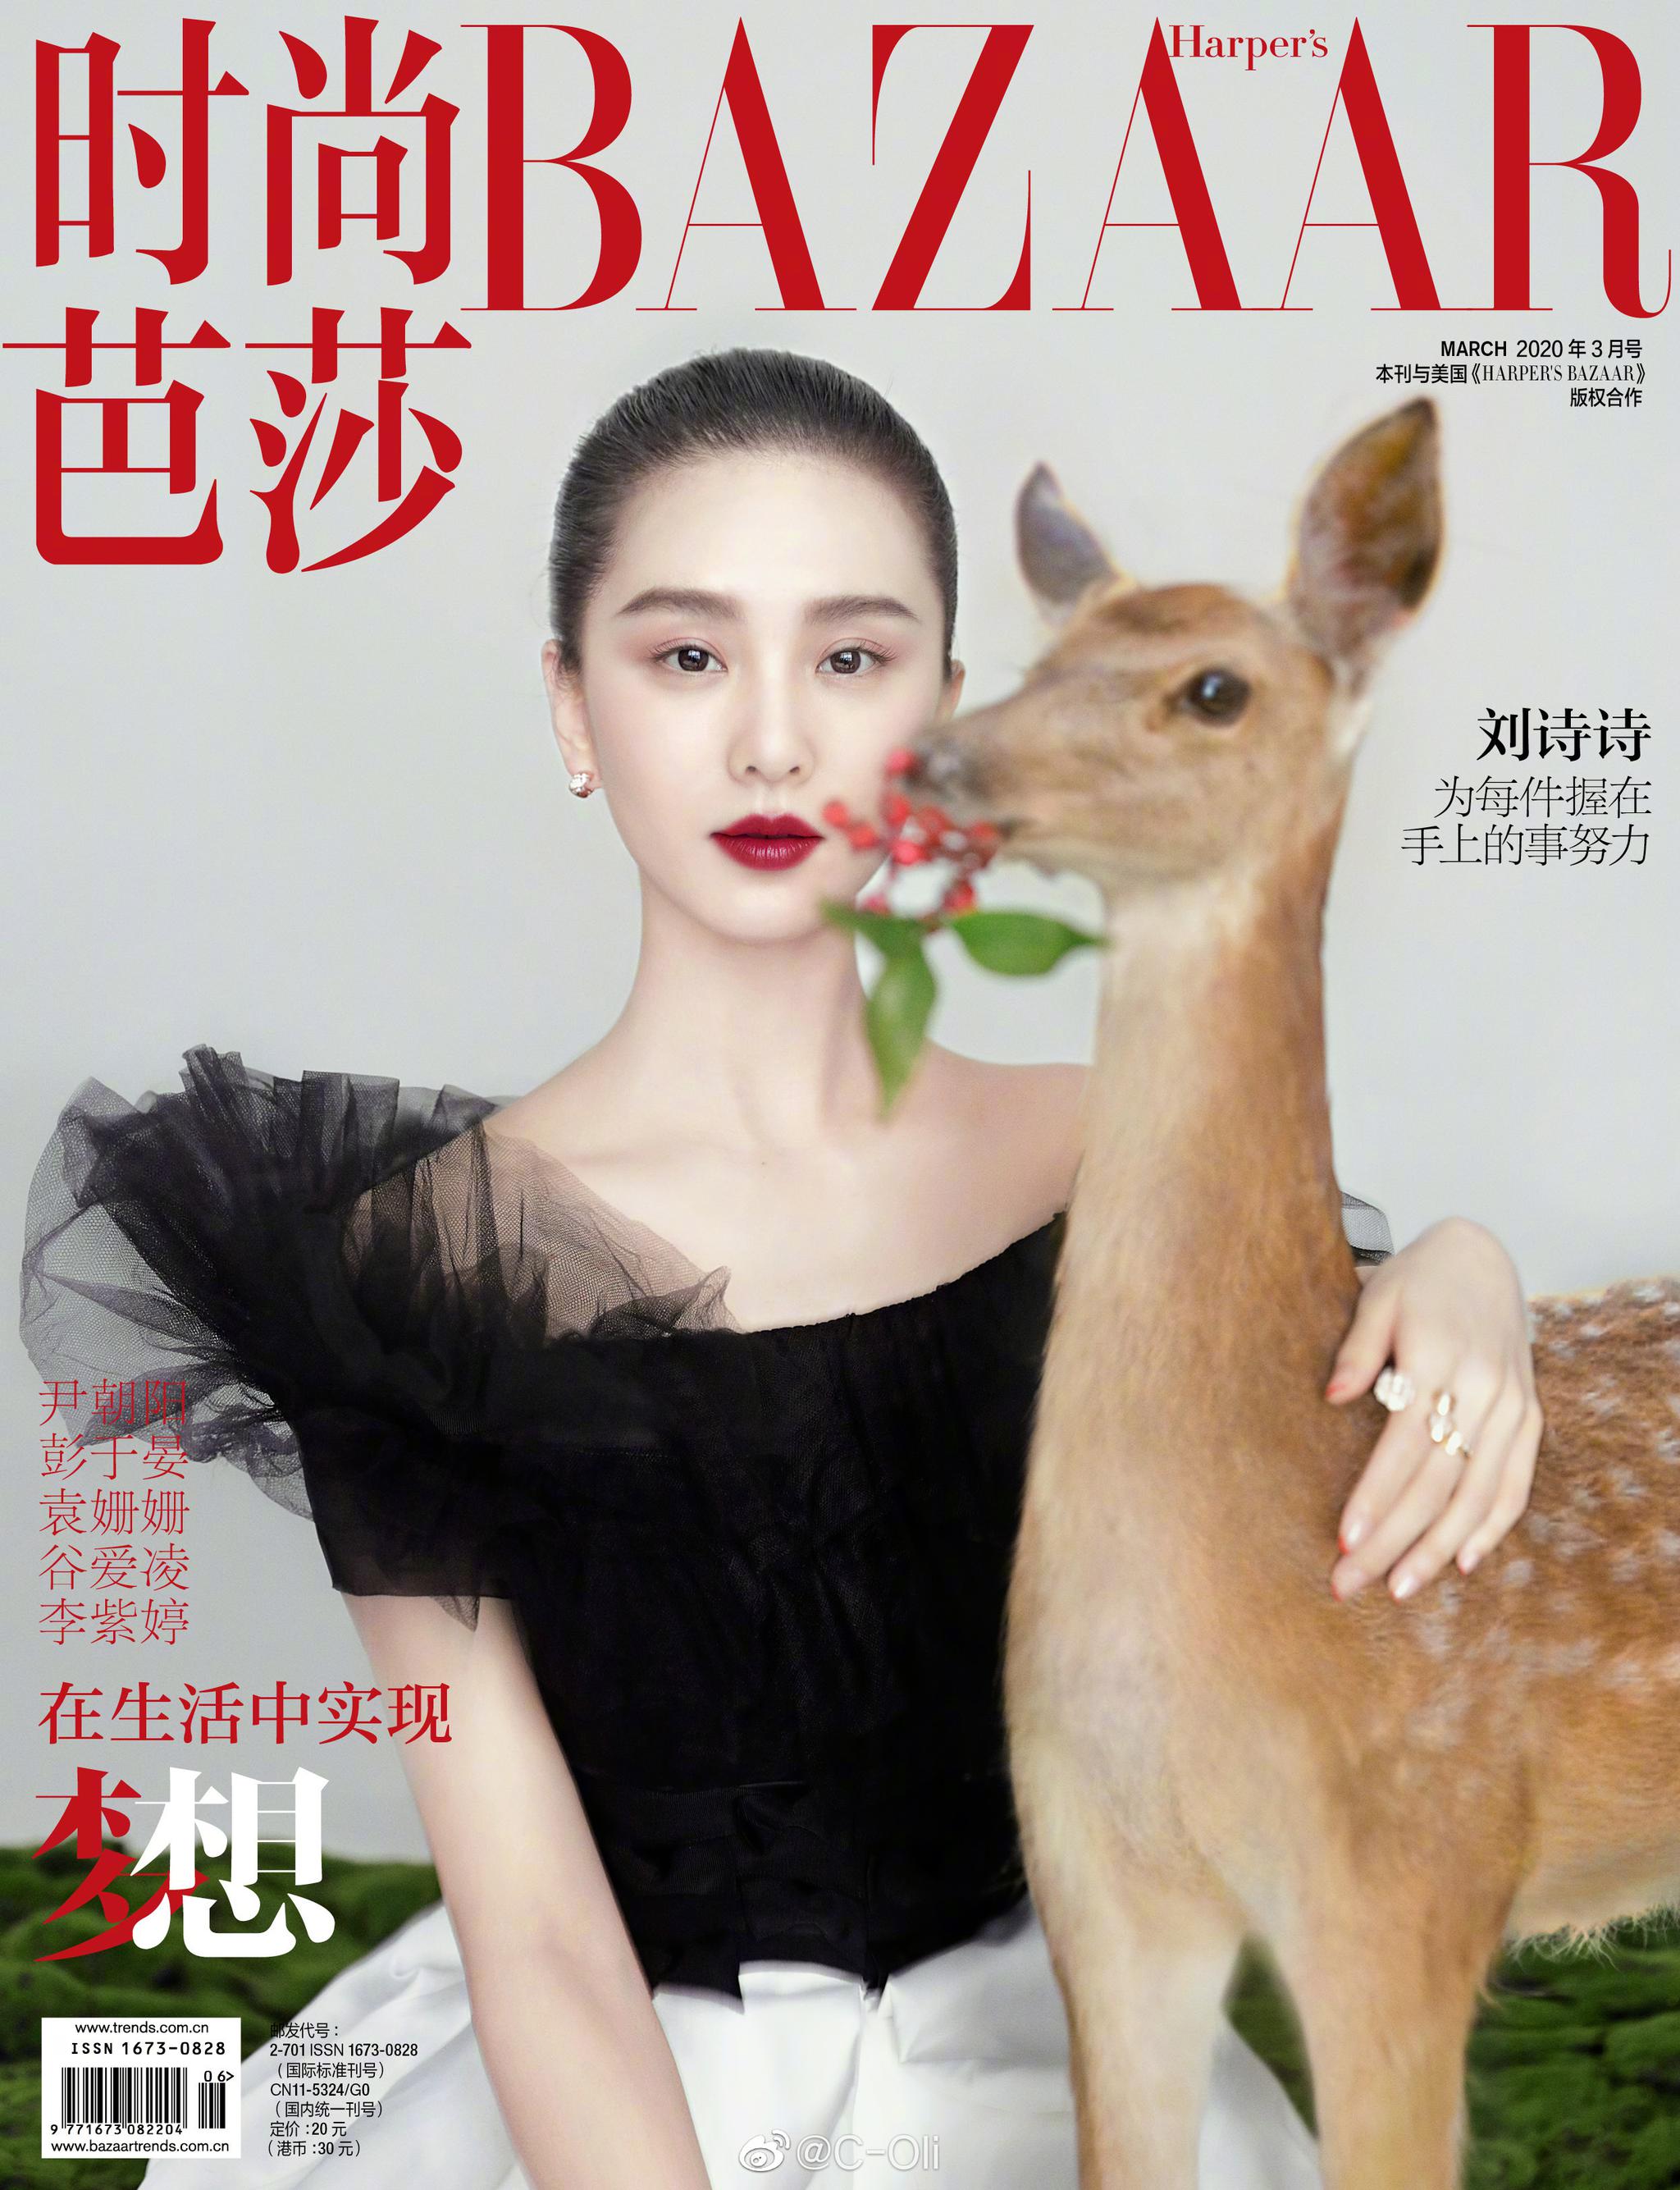 吴亦凡 时尚芭莎 七月刊封面 身着LV湿发造型 连续第6年登芭莎